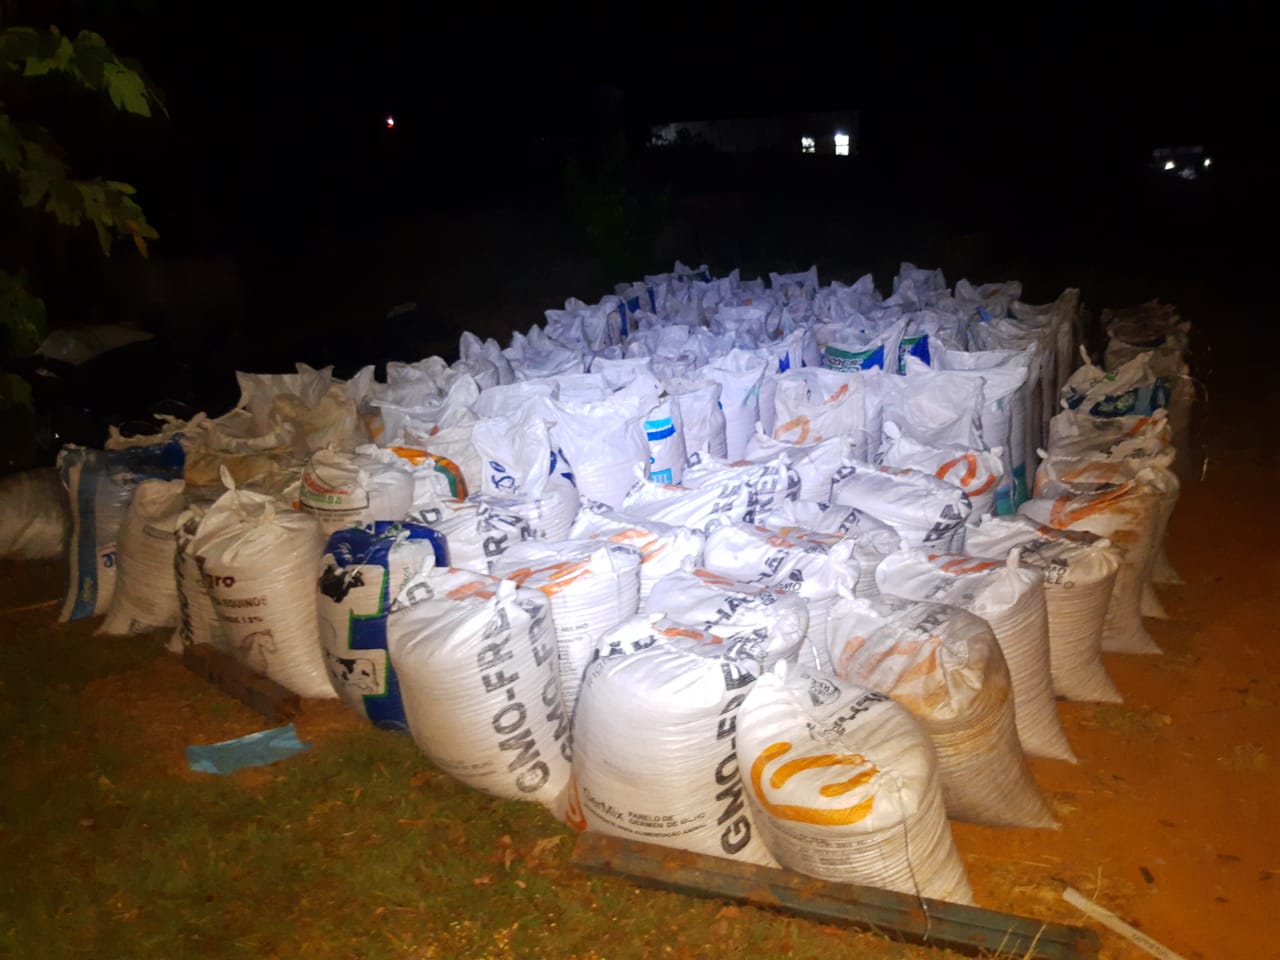 Um homem, que não teve o nome e idade divulgados, foi preso suspeito de furtar cerca de 30 toneladas de milho do patrão, em Itaberaí. (Foto: divulgação)